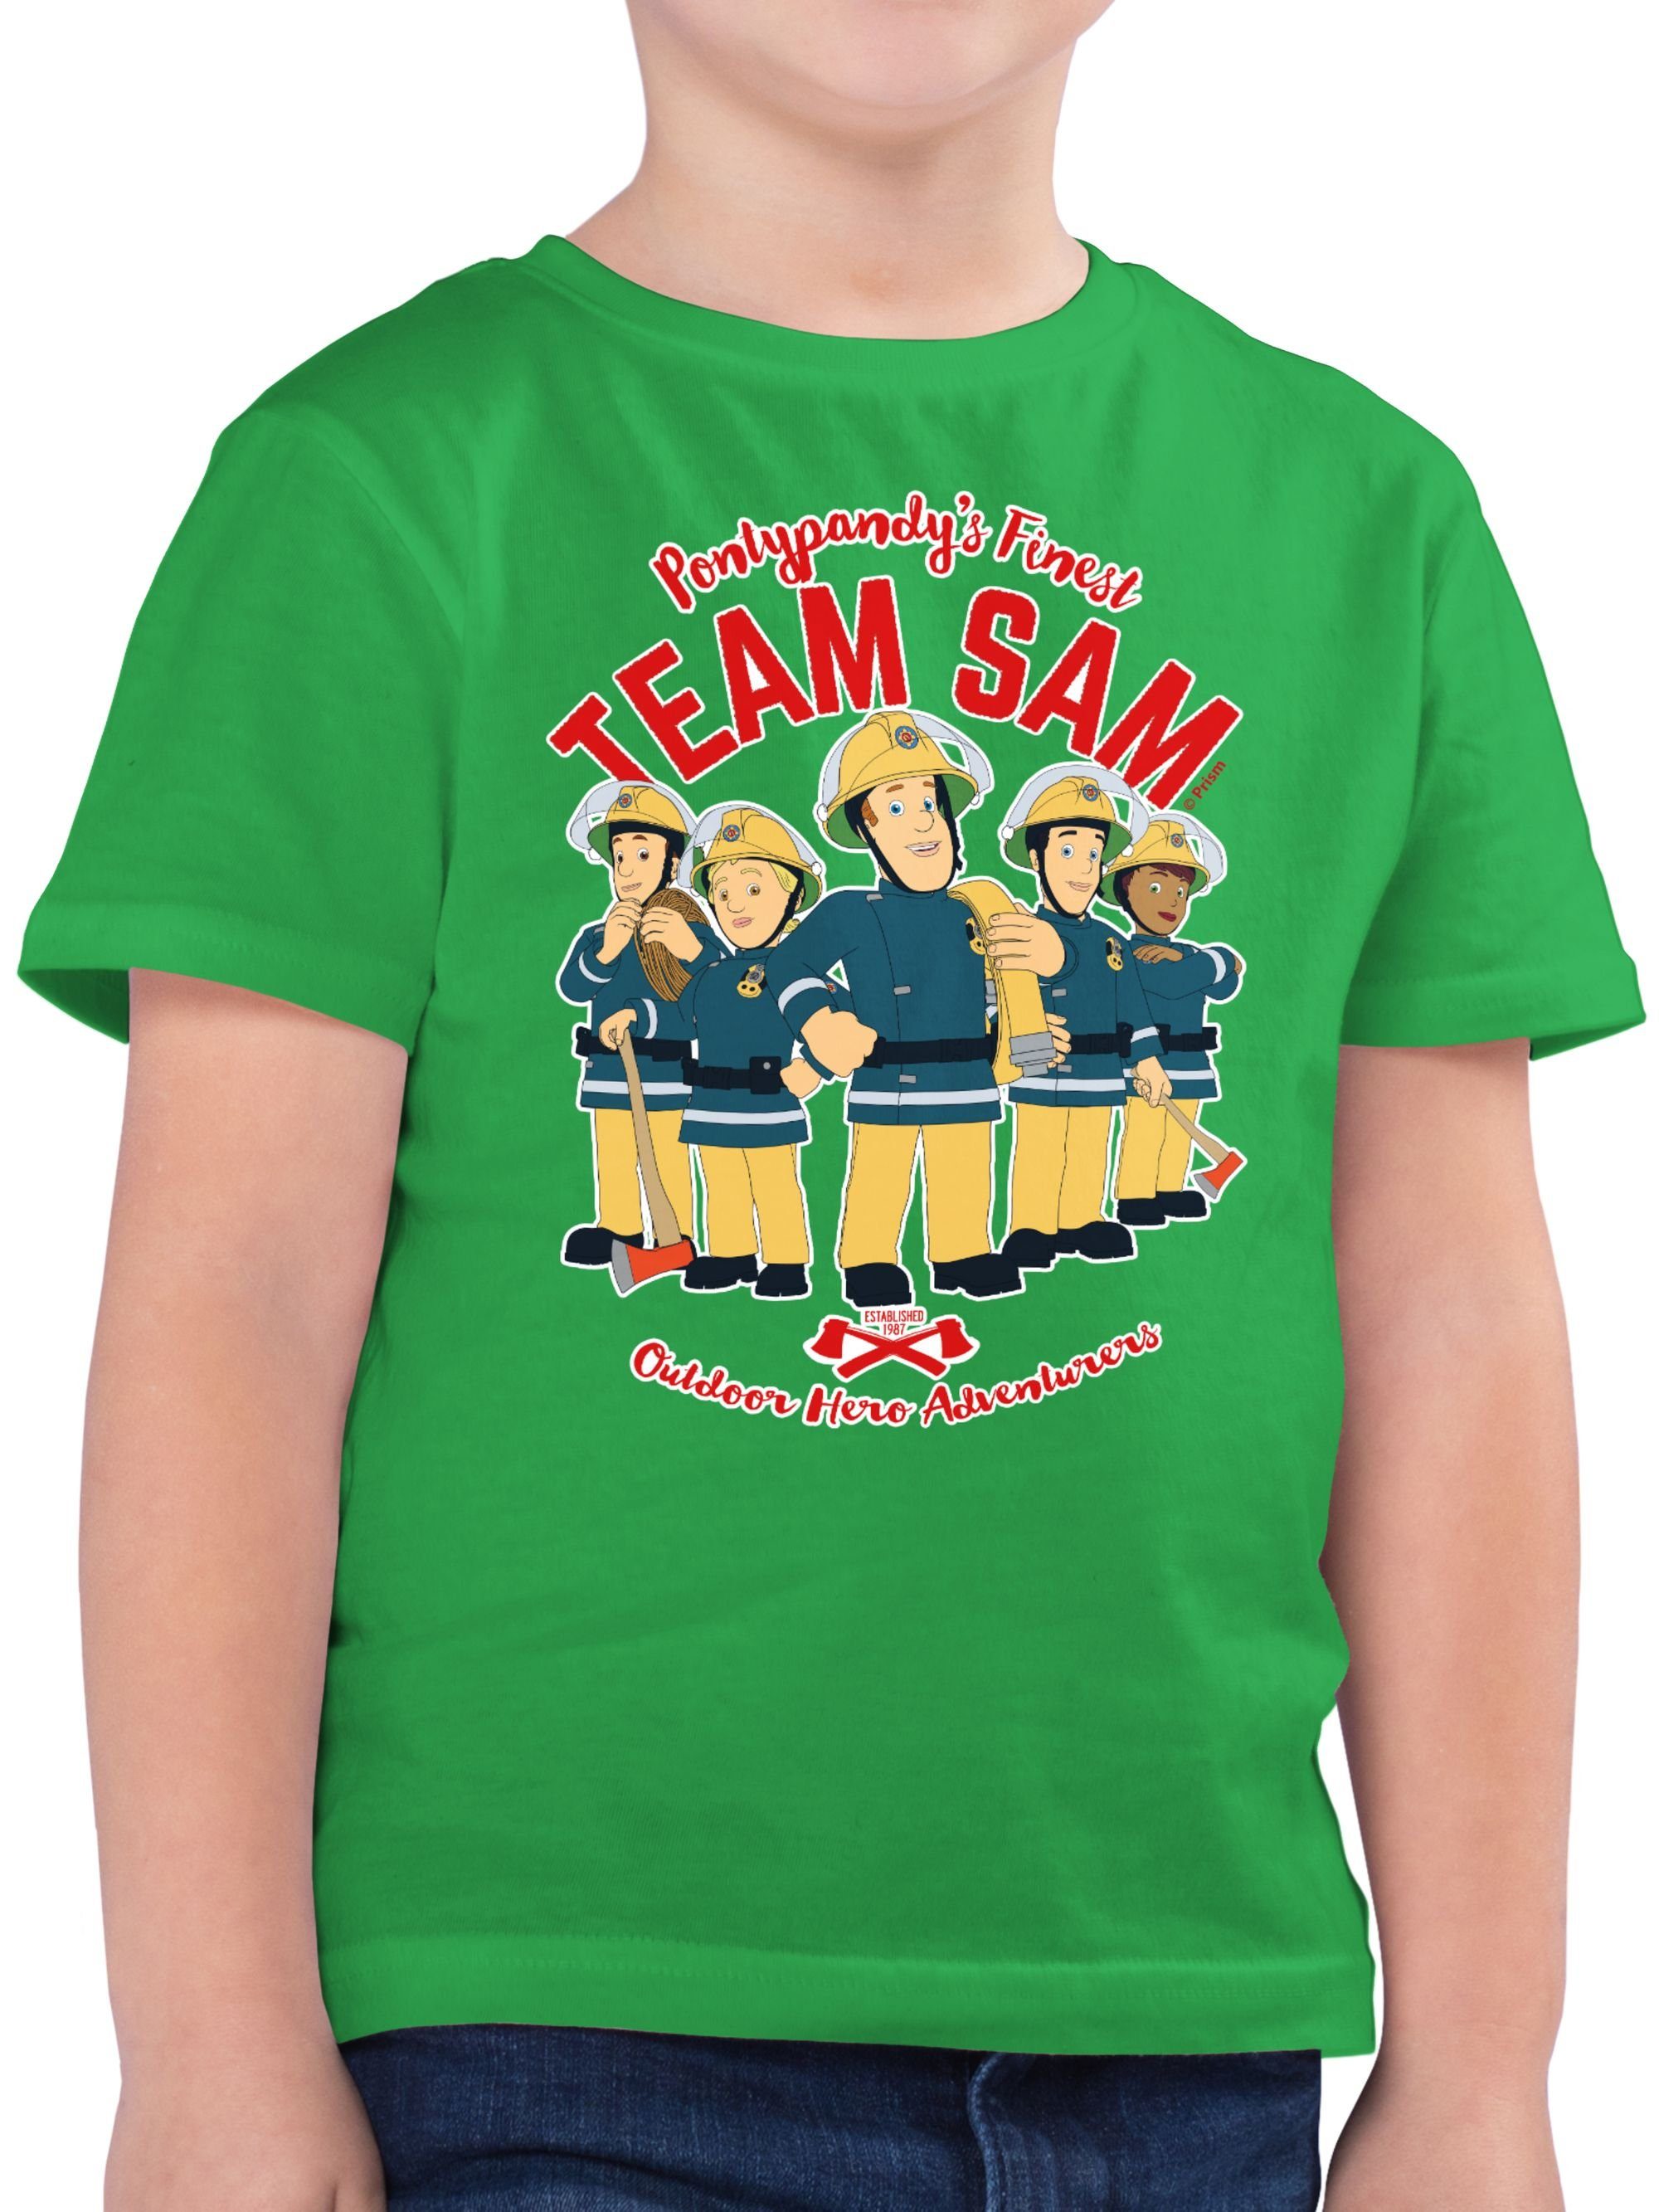 Sam Team Sam Jungen 03 Grün Shirtracer Feuerwehrmann T-Shirt